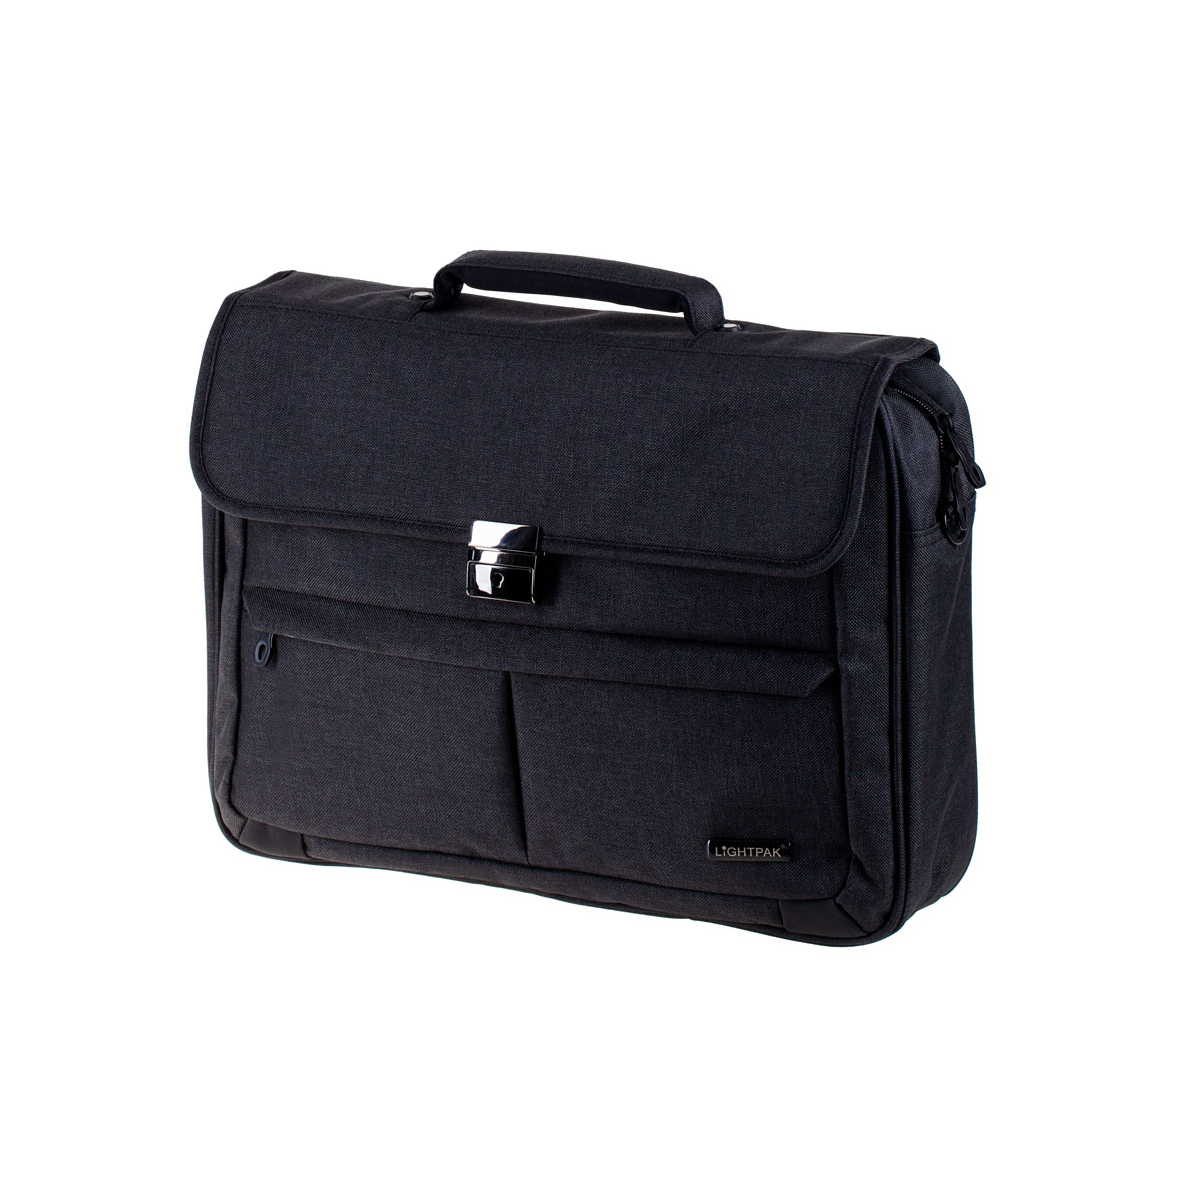 LIGHTPAK Briefcase für Polyester, MOTION Aktentasche anthrazit Universal Notebooktasche